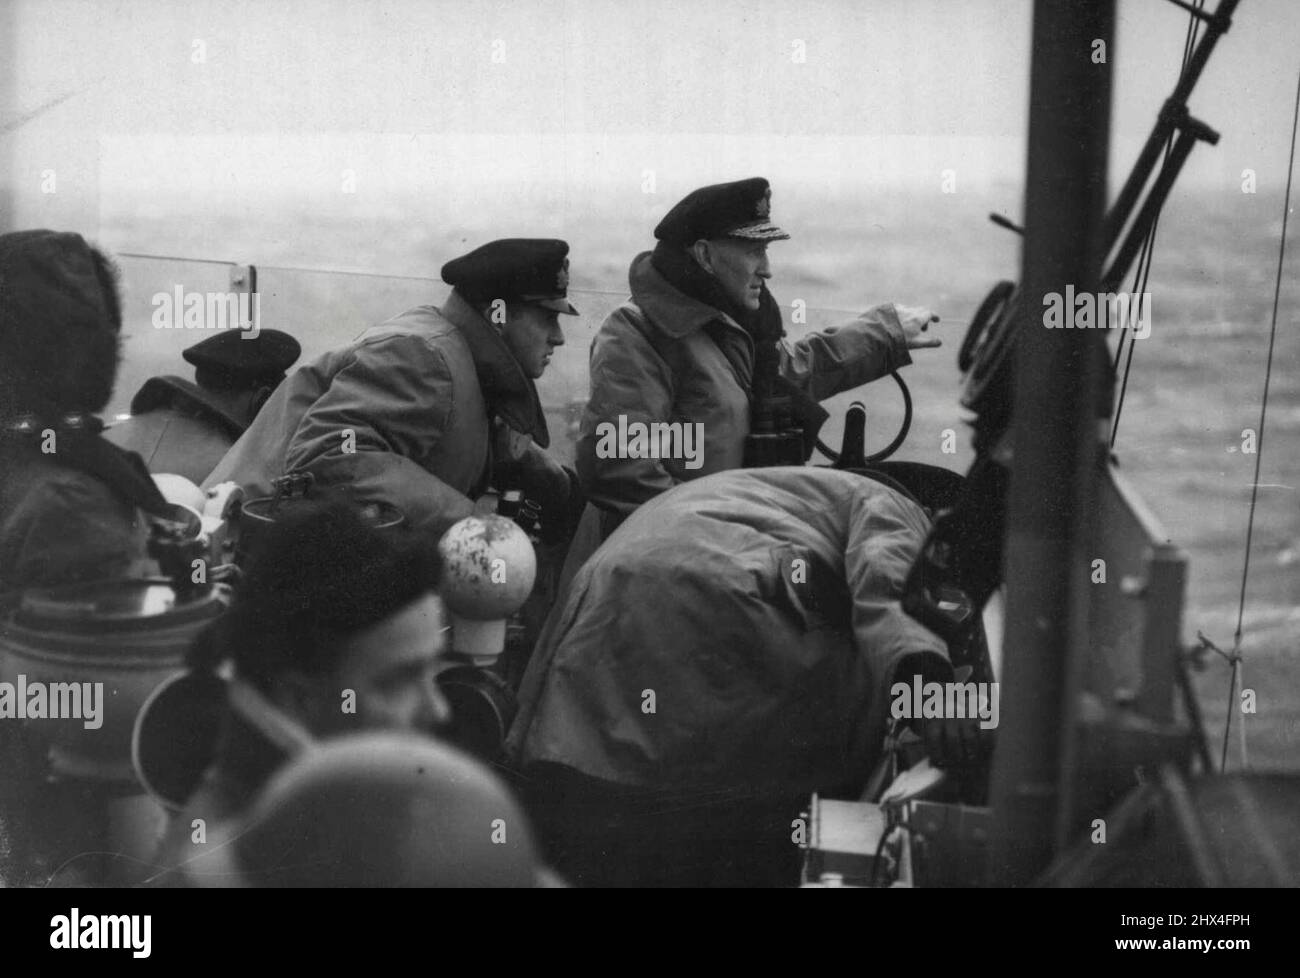 Convoglio britannico in Russia: L'ammiraglio Rhoderick R. McGrigor, C.B. D.S.O., che era al comando della scorta del convoglio con il suo Senior Officer Operations, comandante del tenente G.R.G. Watkins, D.S.O., D.S.C., R.N., sul ponte della Campania durante un attacco aereo nemico. Foto scattata a bordo della scorta britannica Campania durante un recente convoglio britannico da e per la Russia, quando un U-boat è stato affondato e molti aerei tedeschi attaccanti sono stati inviati in crash in mare.(vedi Admiralty Story Sab. Sera carte 31-3145. Maggio 28, 1945. (Foto di British Official Admiralty Photo). Foto Stock